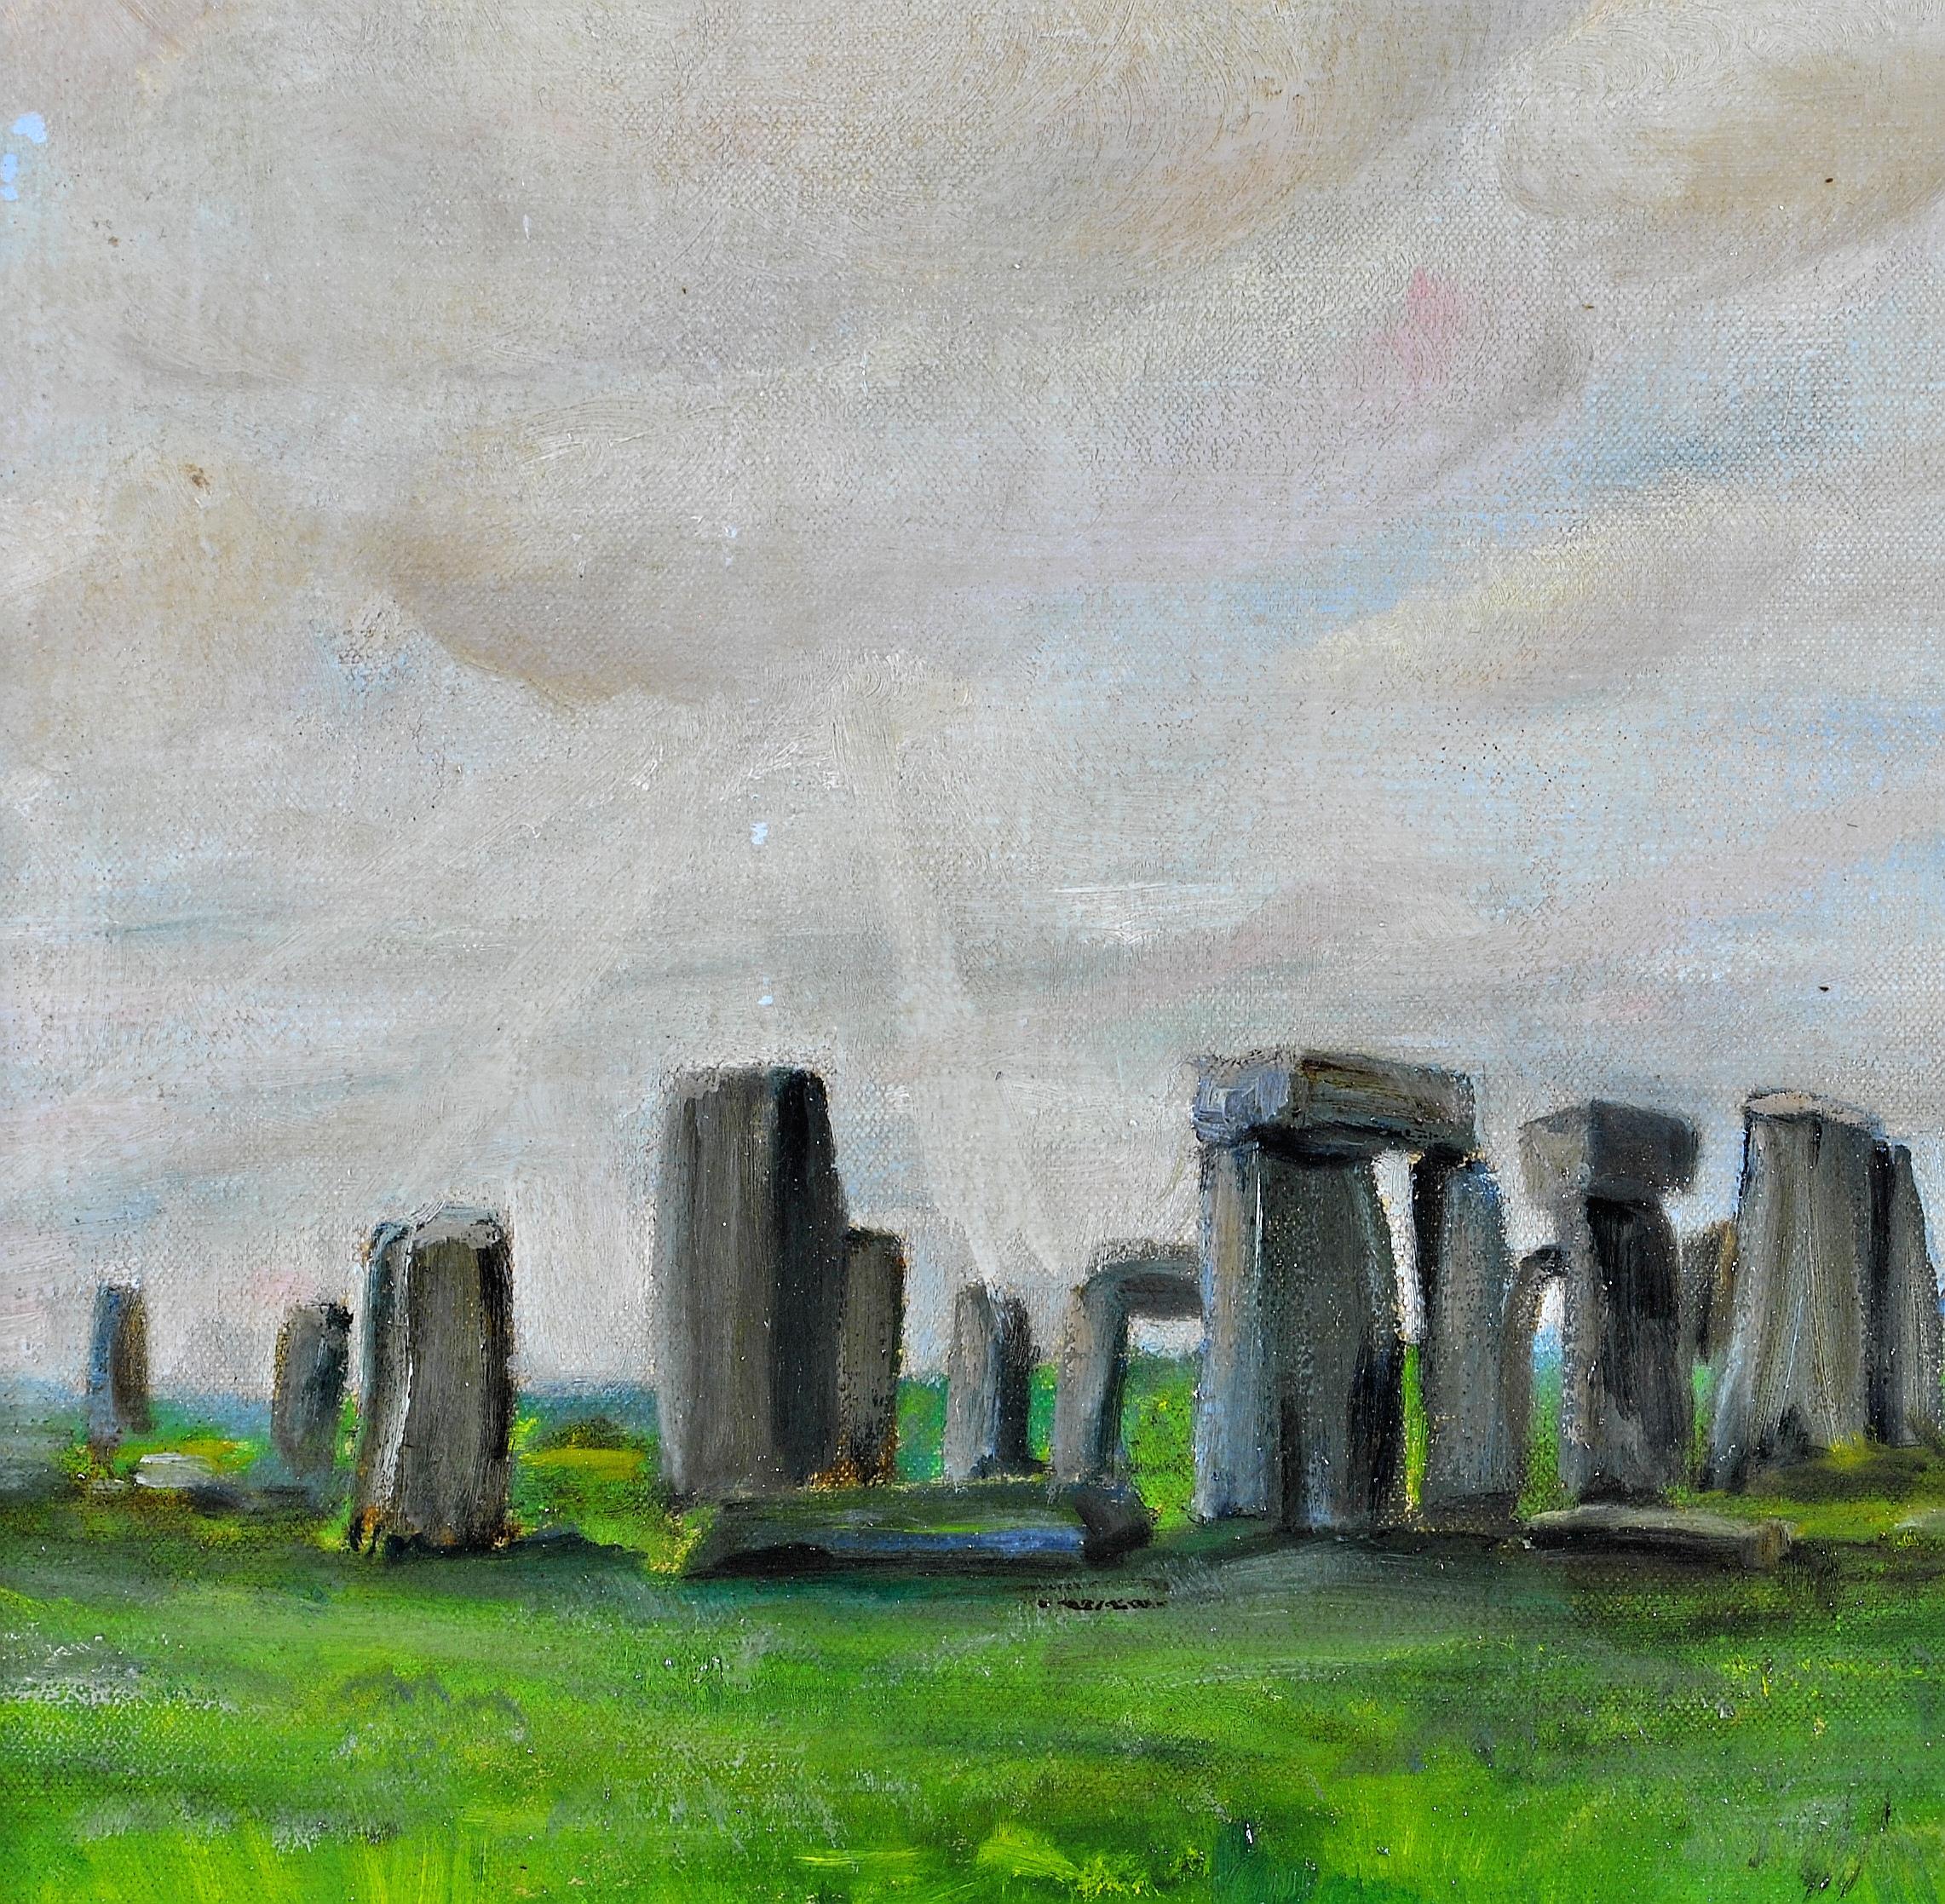 Belle huile sur toile des années 1920 représentant la célèbre formation rocheuse préhistorique de Stonehenge sous un ciel nuageux atmosphérique, par Charles Henry Harrison Burleigh. Peinture de Stonehenge d'excellente qualité et très ancienne. Signé